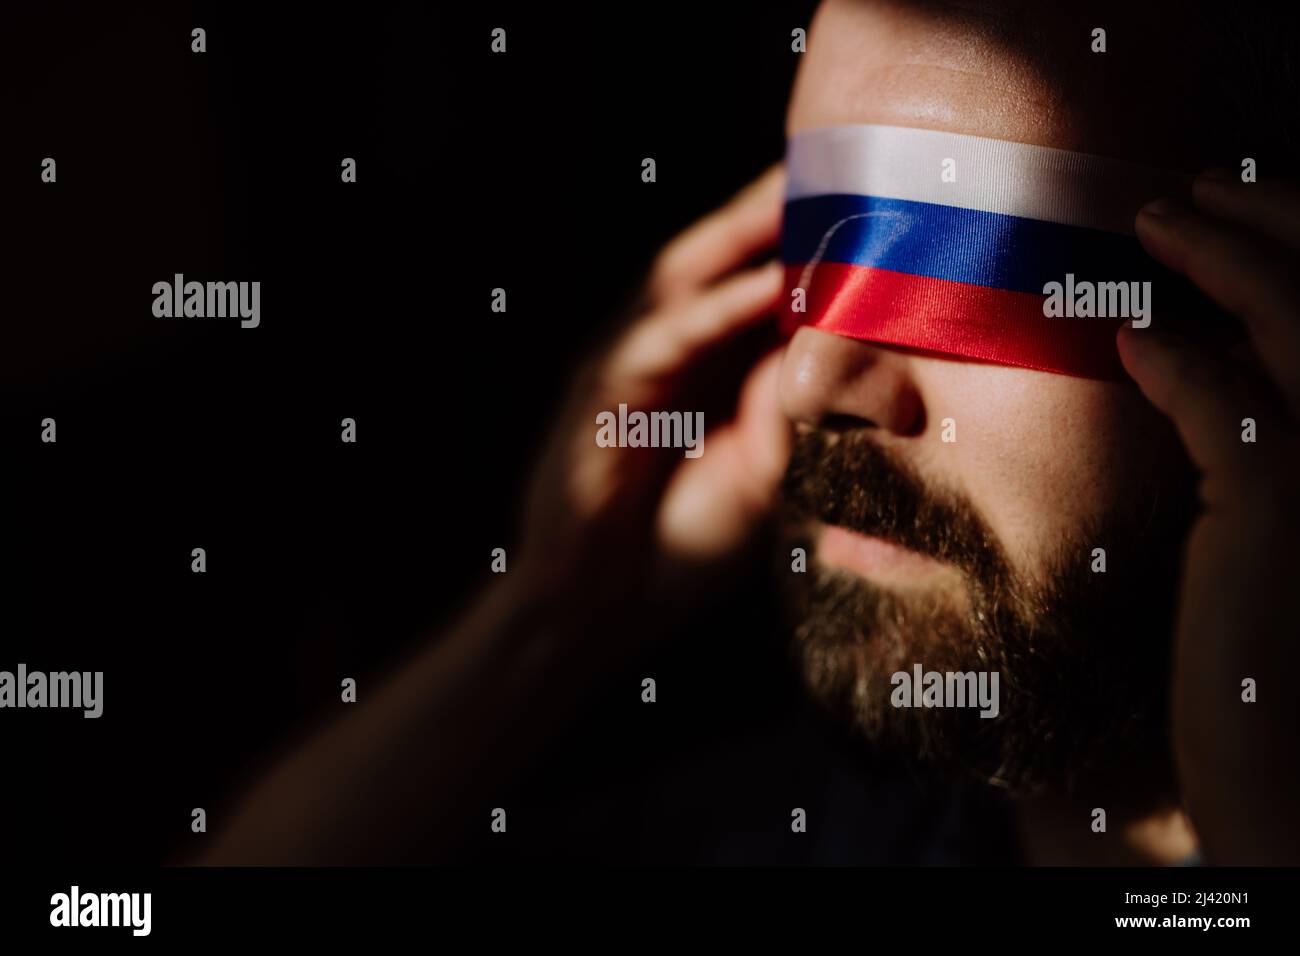 Uomo con bandiera russa cieca su sfondo nero, propaganda russa ha chiuso il concetto degli occhi della gente. Foto Stock